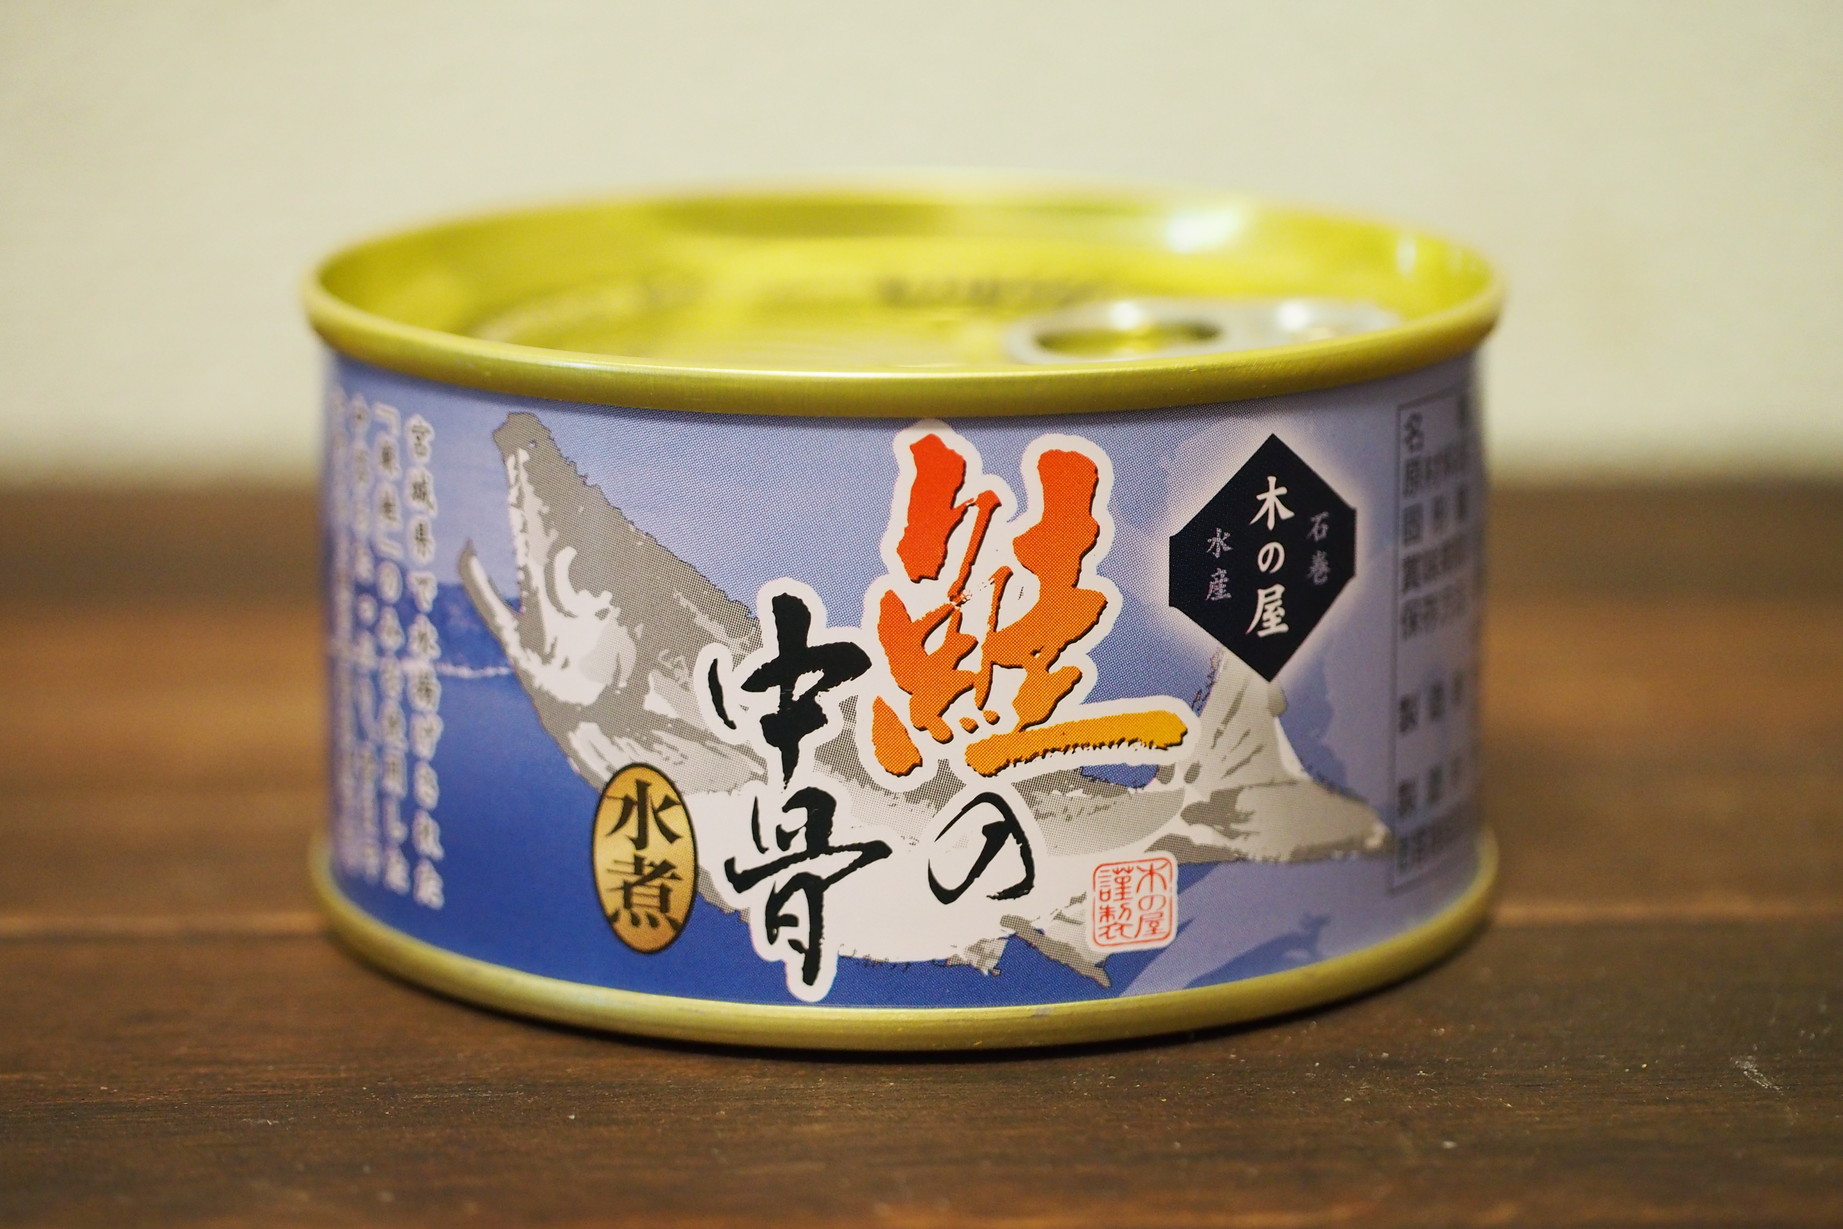 【鮭缶】木の屋石巻水産『鮭の中骨水煮』が料理にもおつまみにも万能なスゴイ缶詰だった